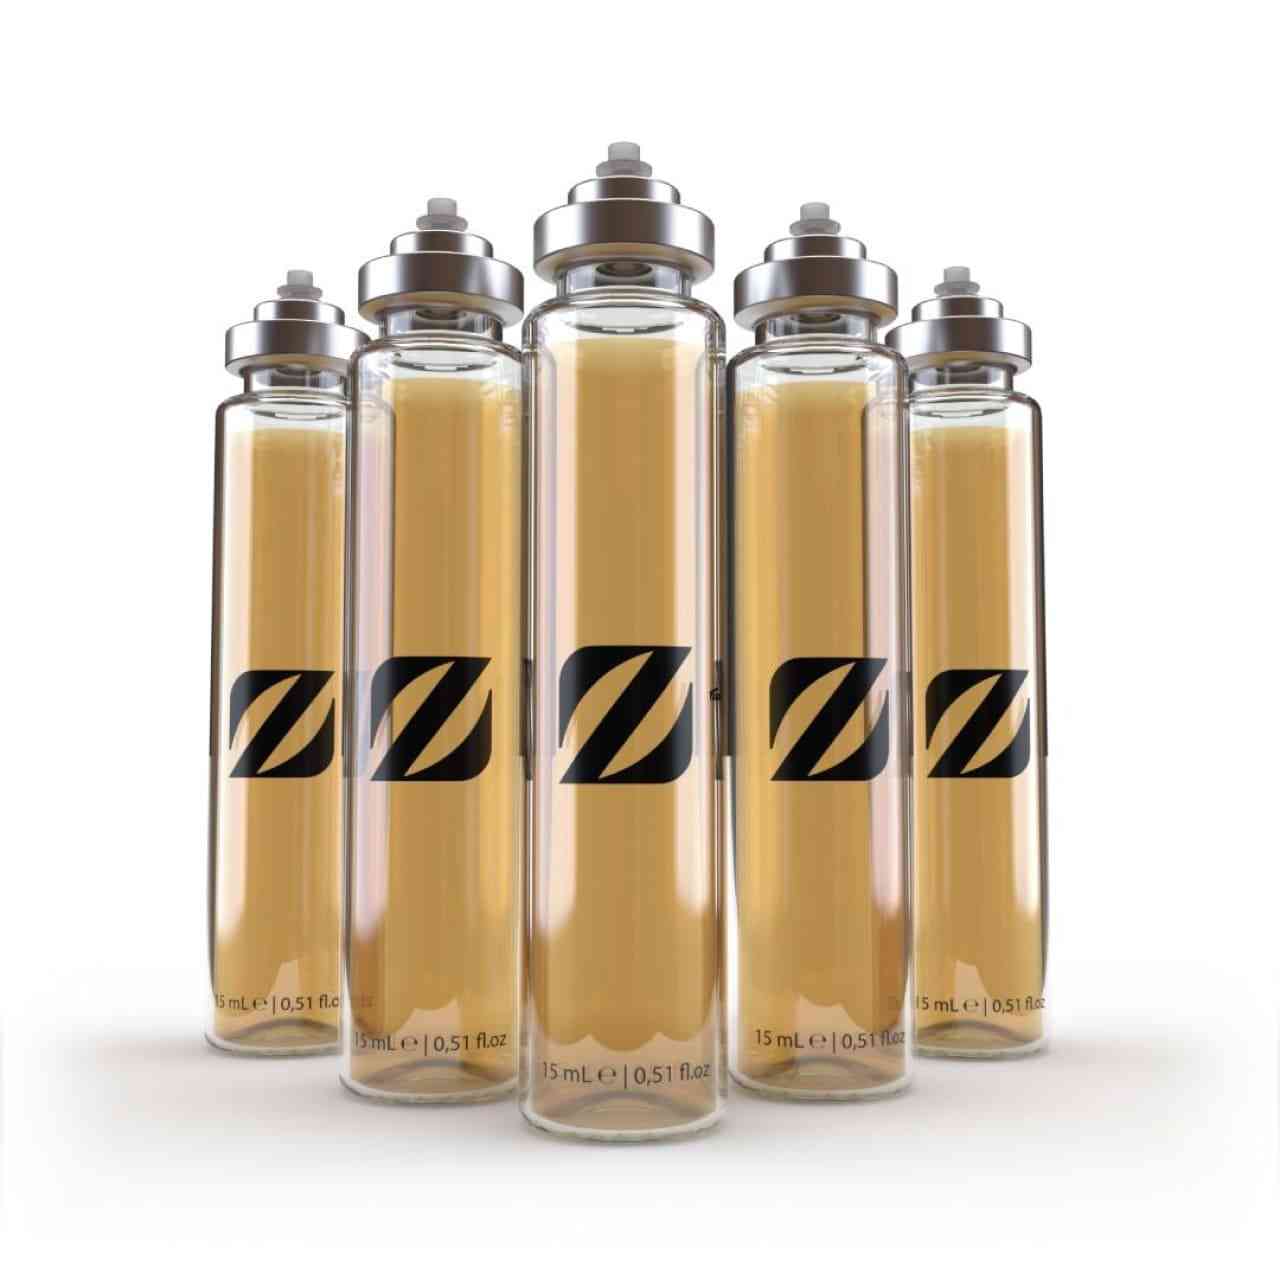 Chogan Parfum T018x5 - maskuliner Duft mit frischen, würzigen und holzigen Noten, ideal für den modernen Mann.